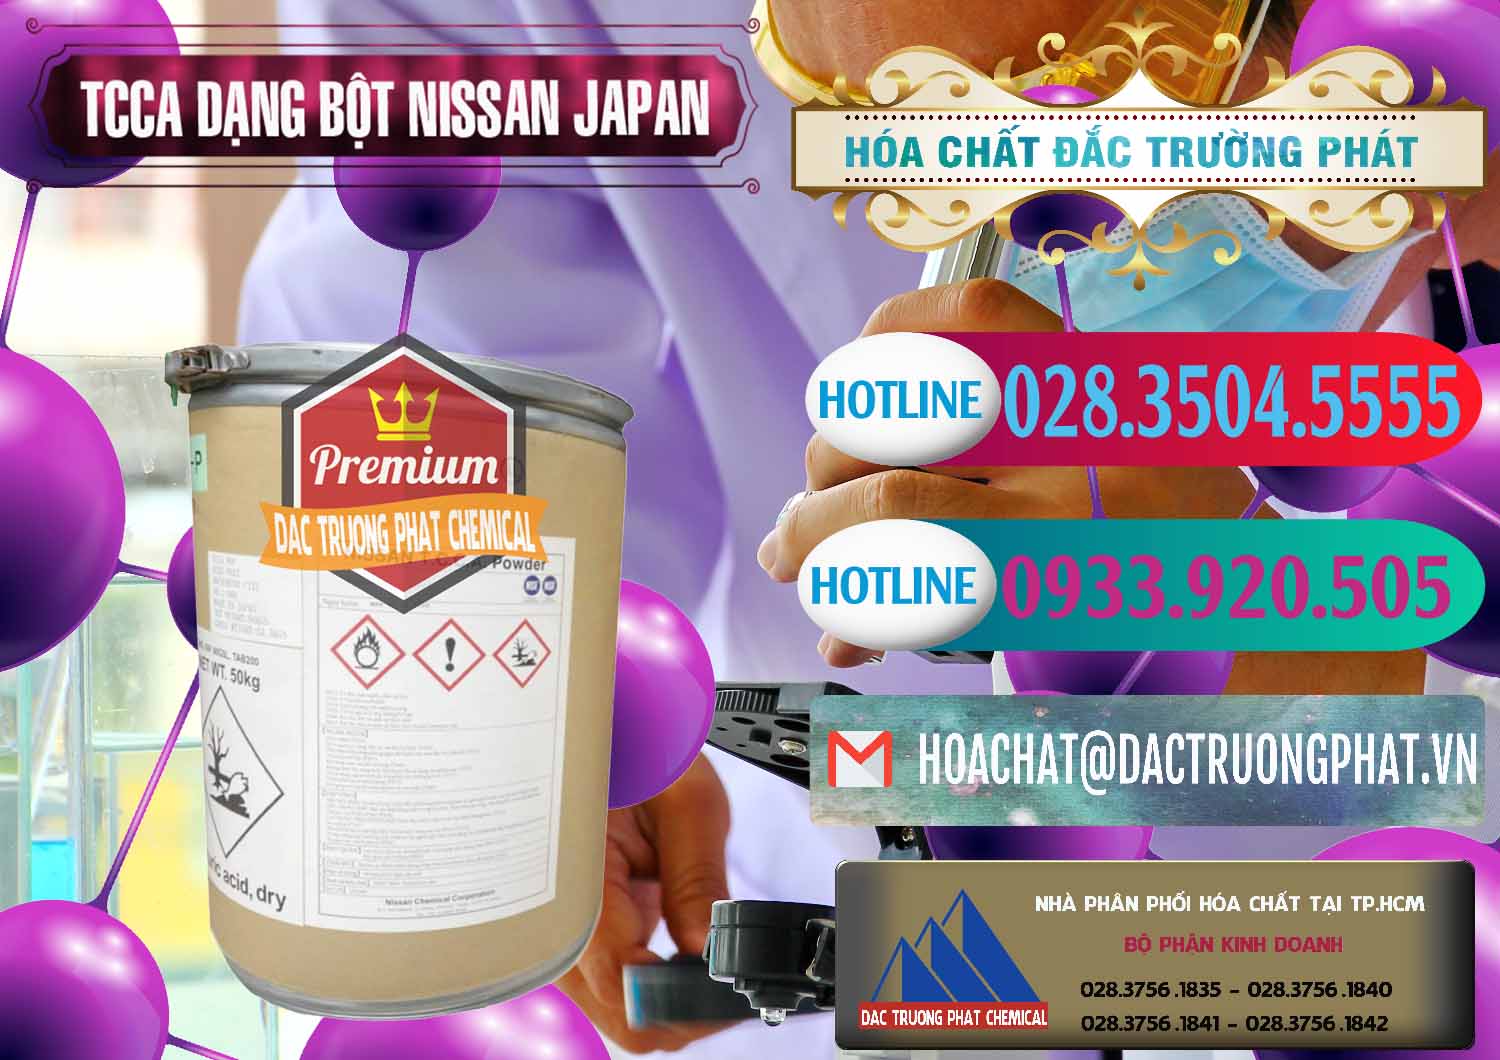 Nơi chuyên bán - cung cấp TCCA - Acid Trichloroisocyanuric 90% Dạng Bột Nissan Nhật Bản Japan - 0375 - Nhà phân phối _ cung ứng hóa chất tại TP.HCM - truongphat.vn